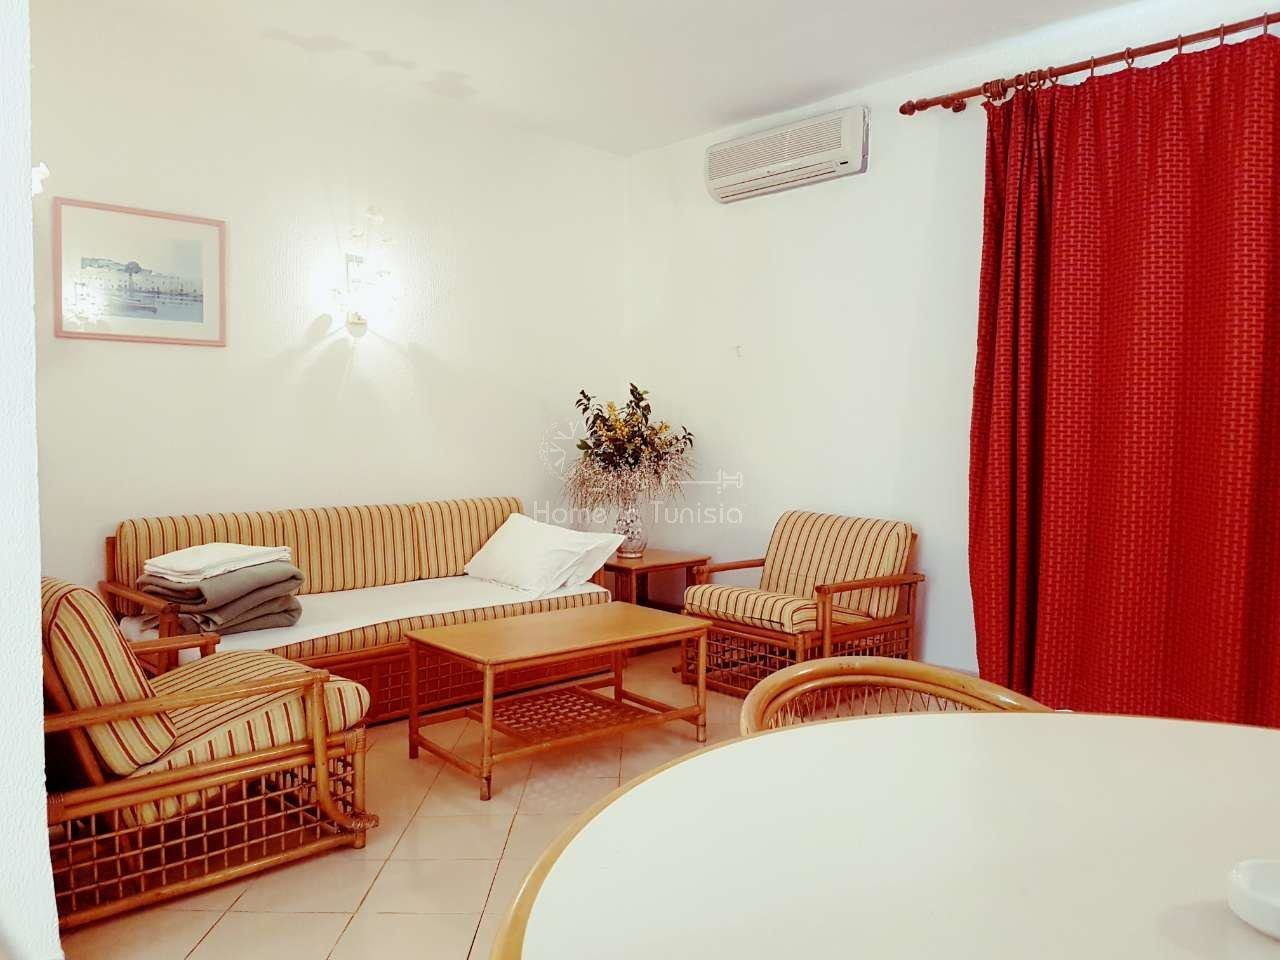 Appartement S+1 de 78 m2 meublé équipé situé en bord de mer avec jardin terrasse piscine plage